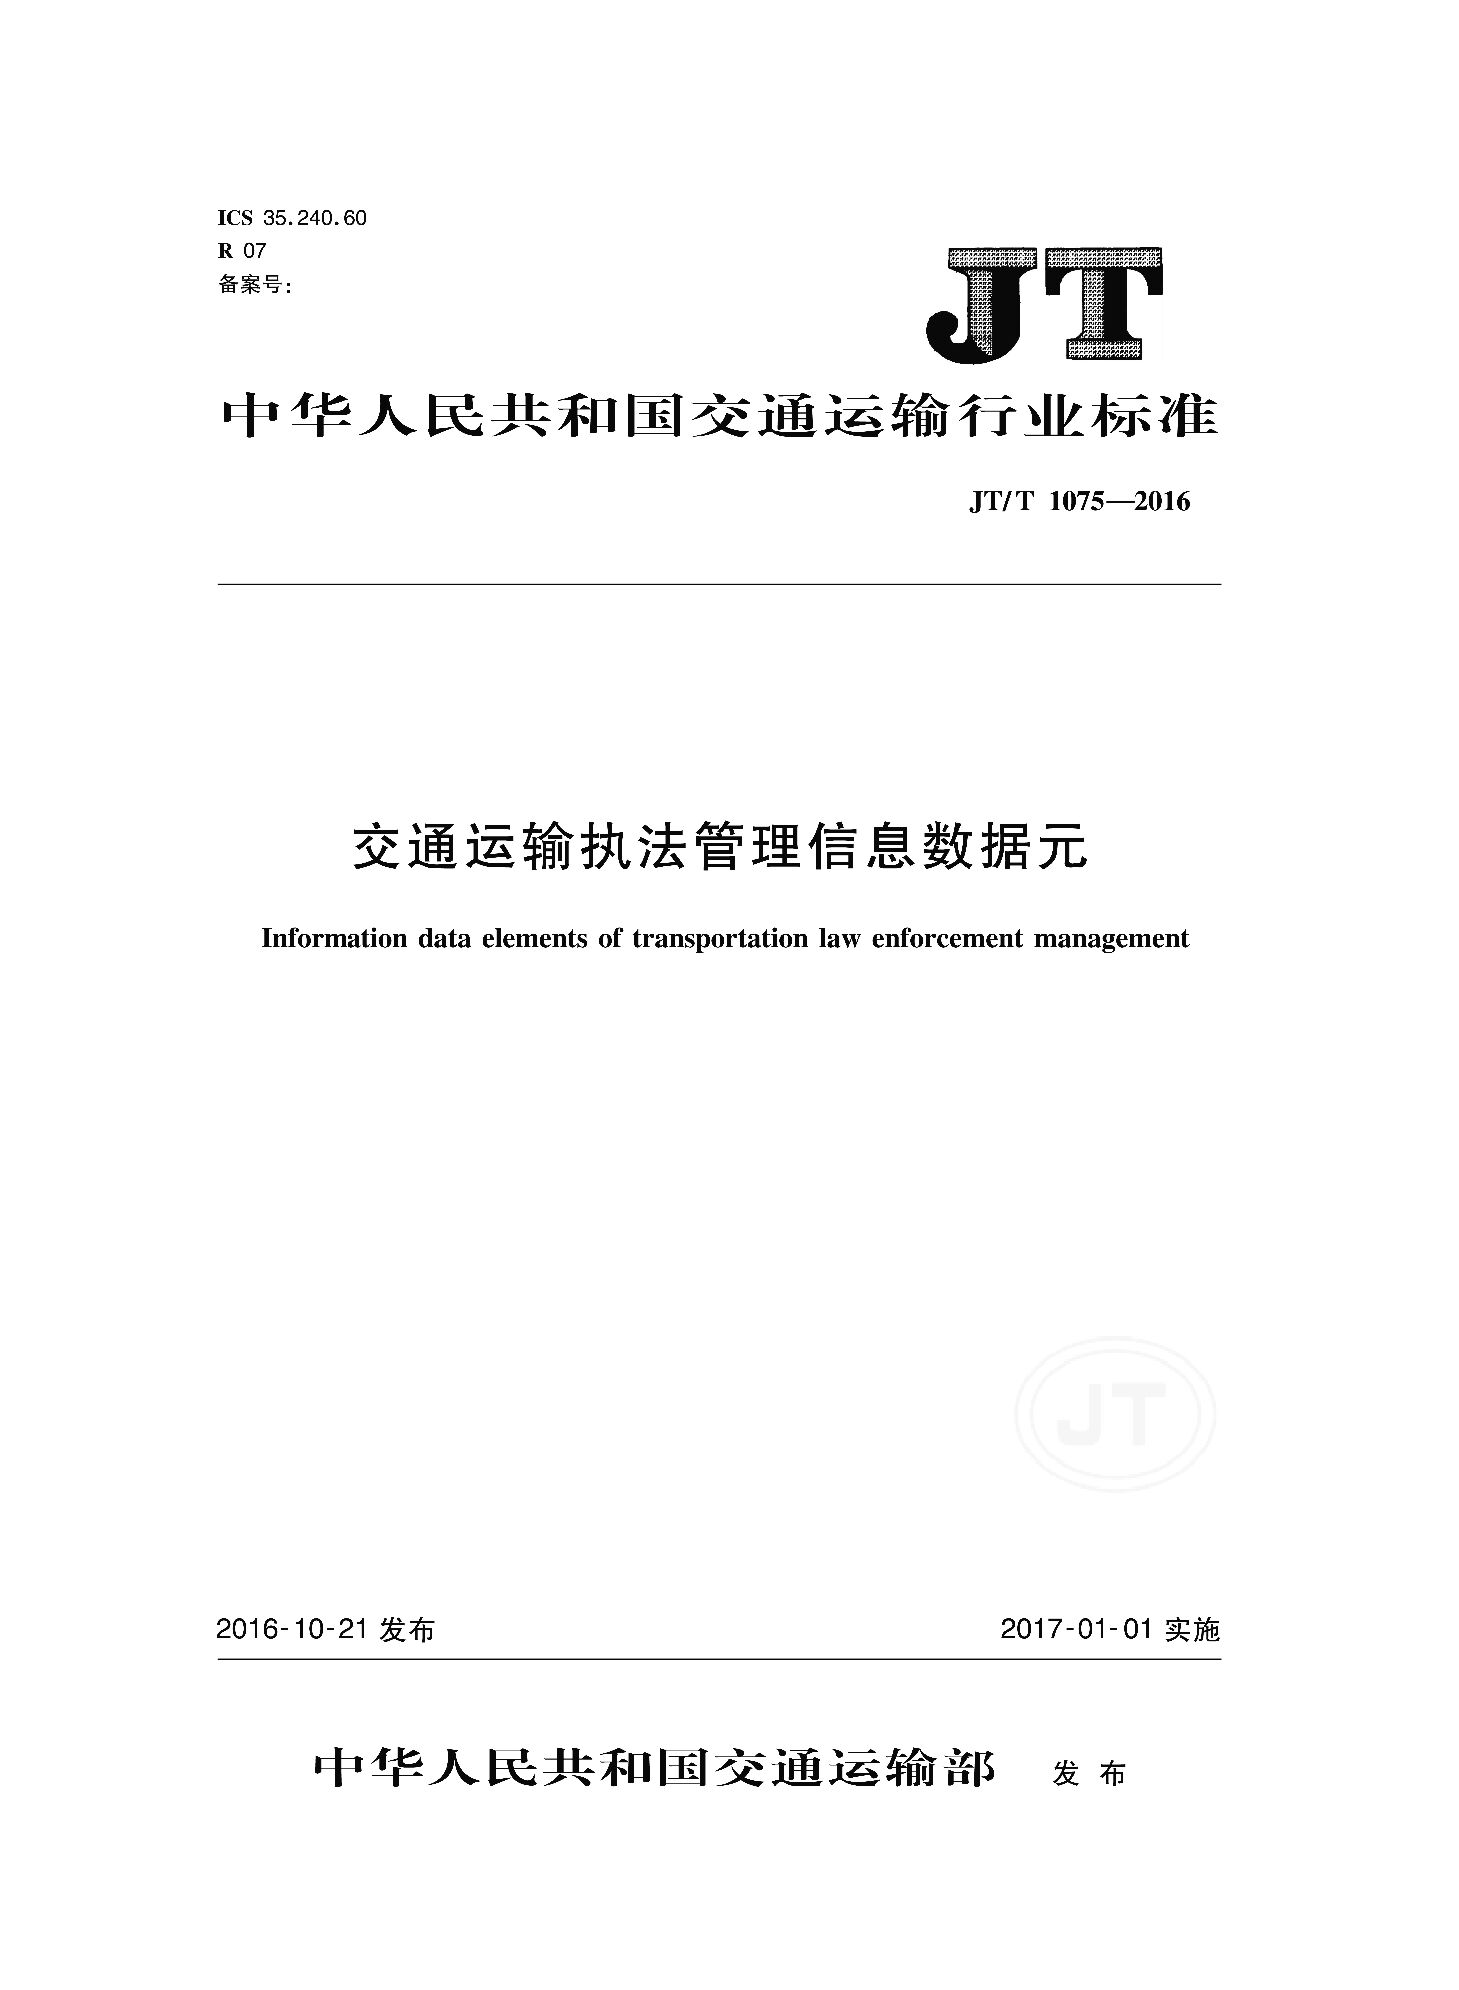 JT/T 1075-2016封面图